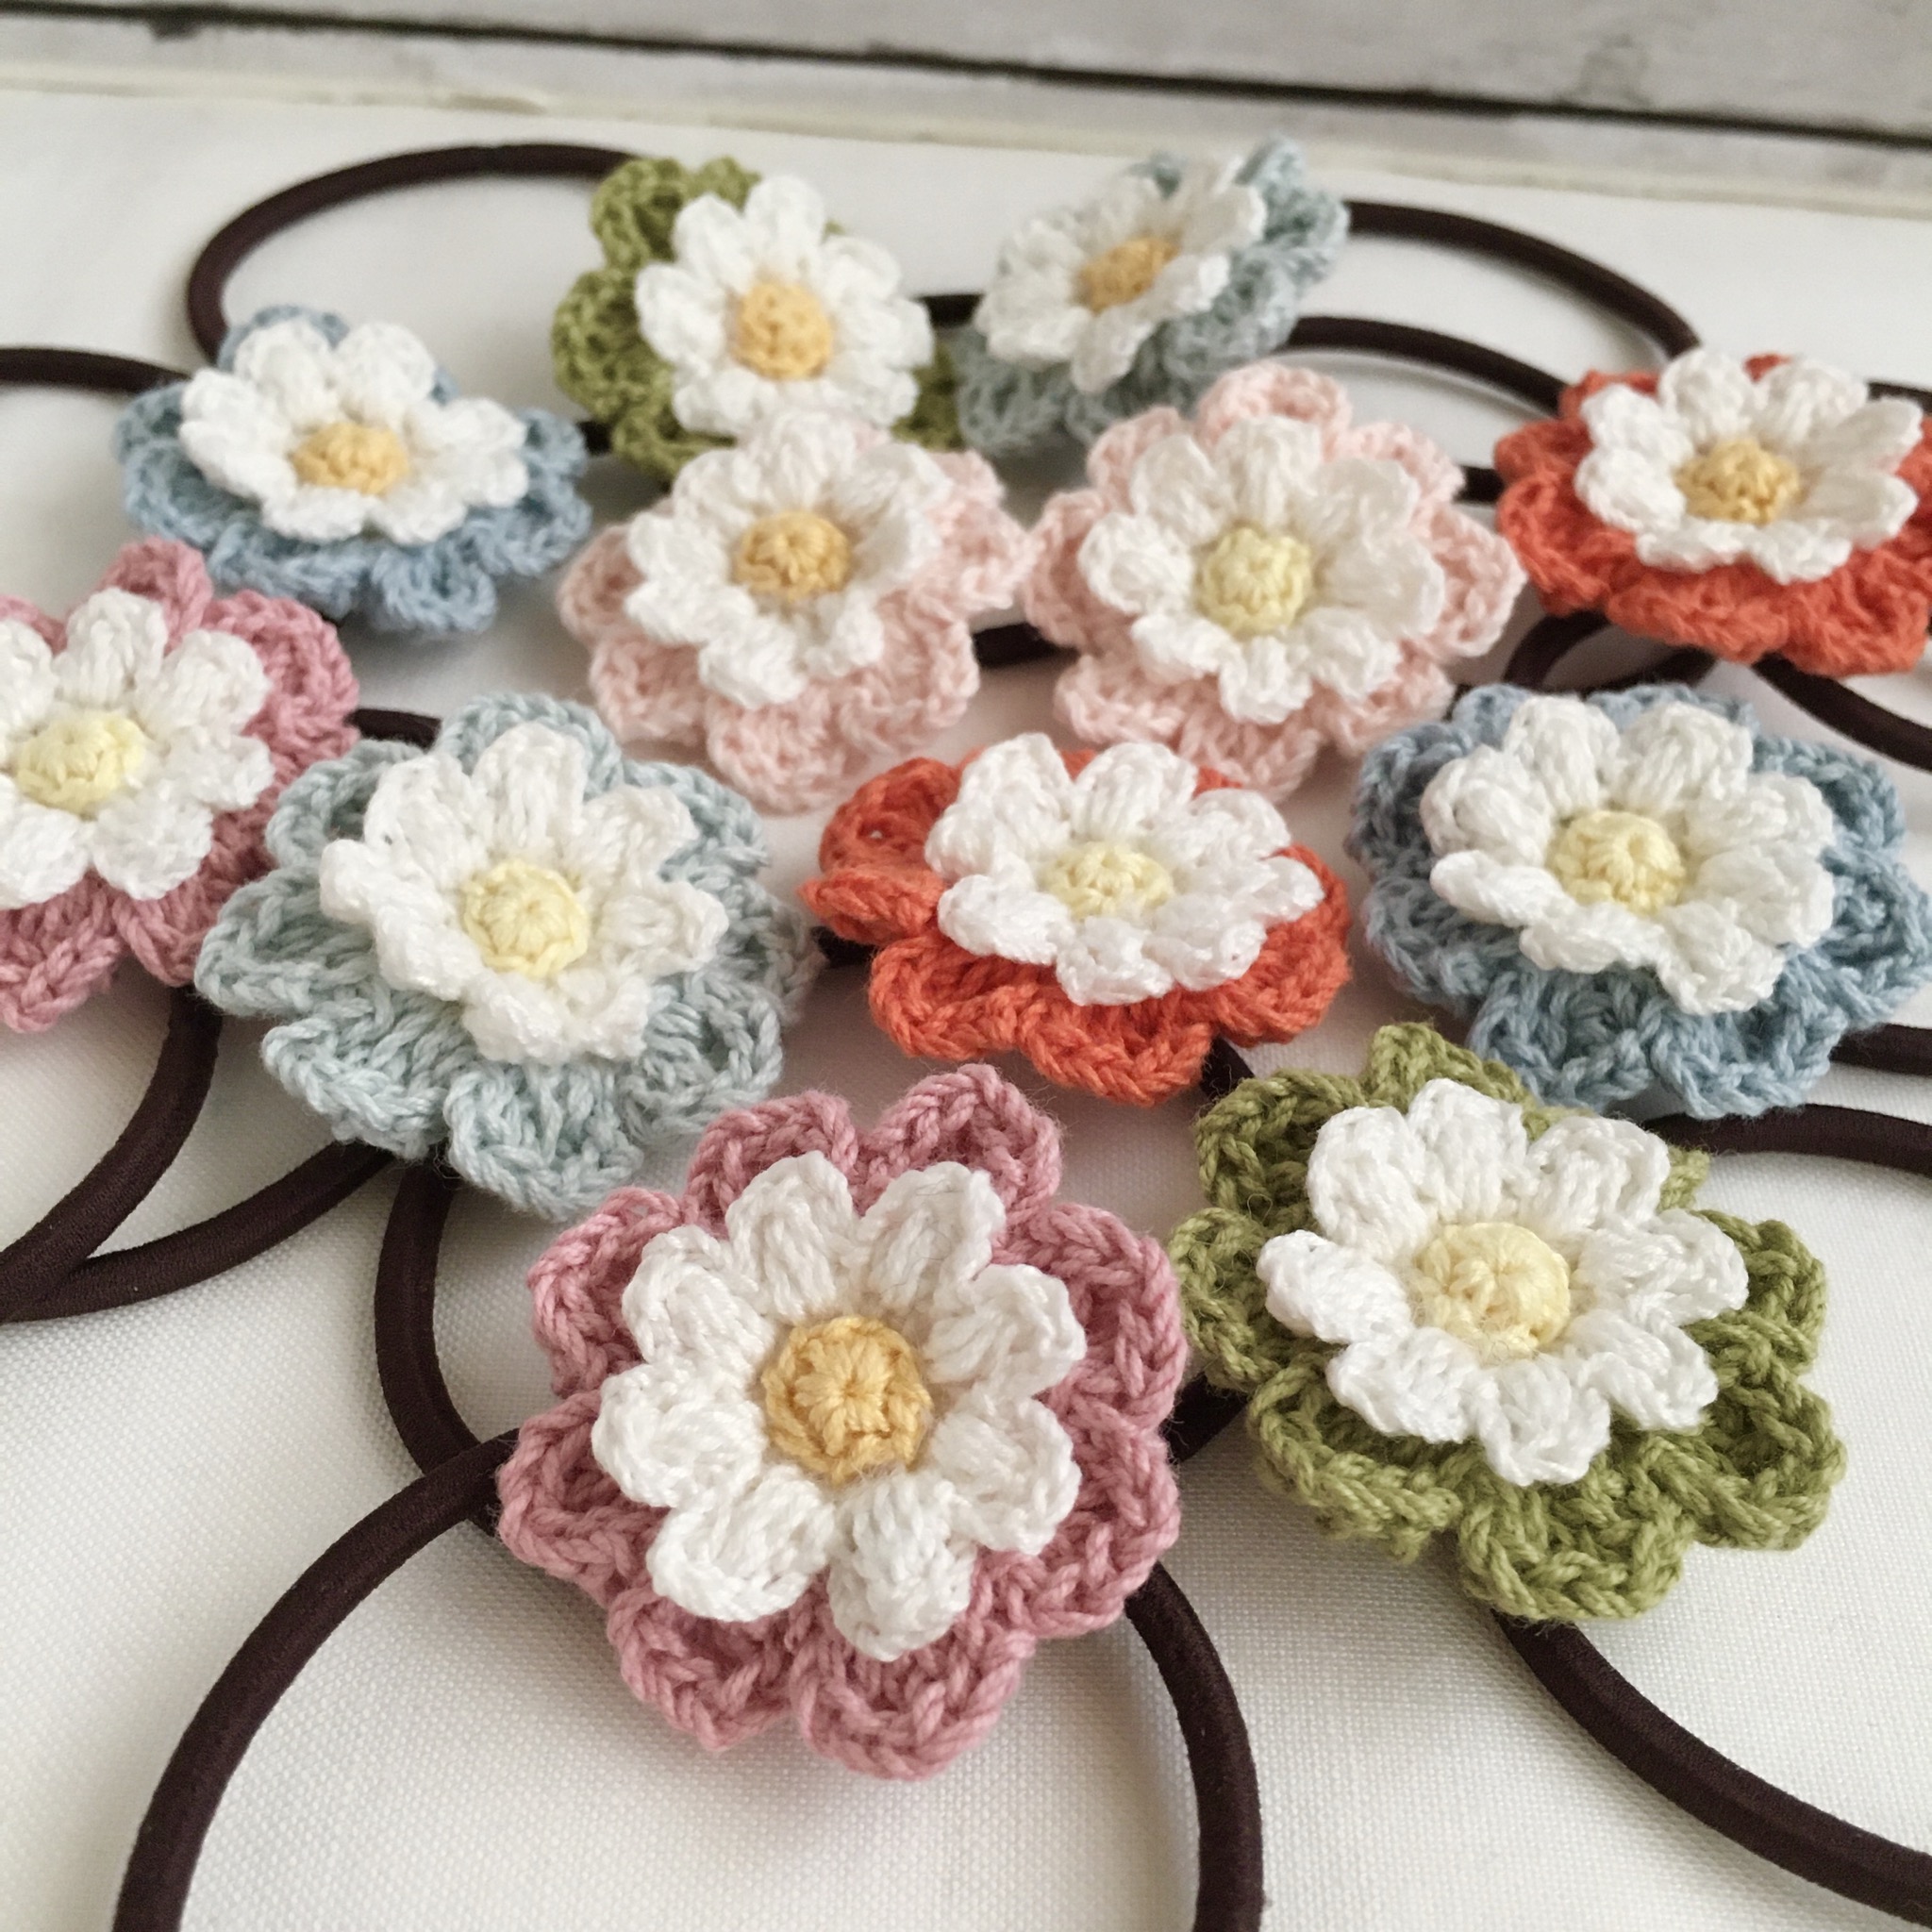 選べる コットン糸で編むナチュラル雰囲気のお花ヘアゴム Iichi ハンドメイド クラフト作品 手仕事品の通販